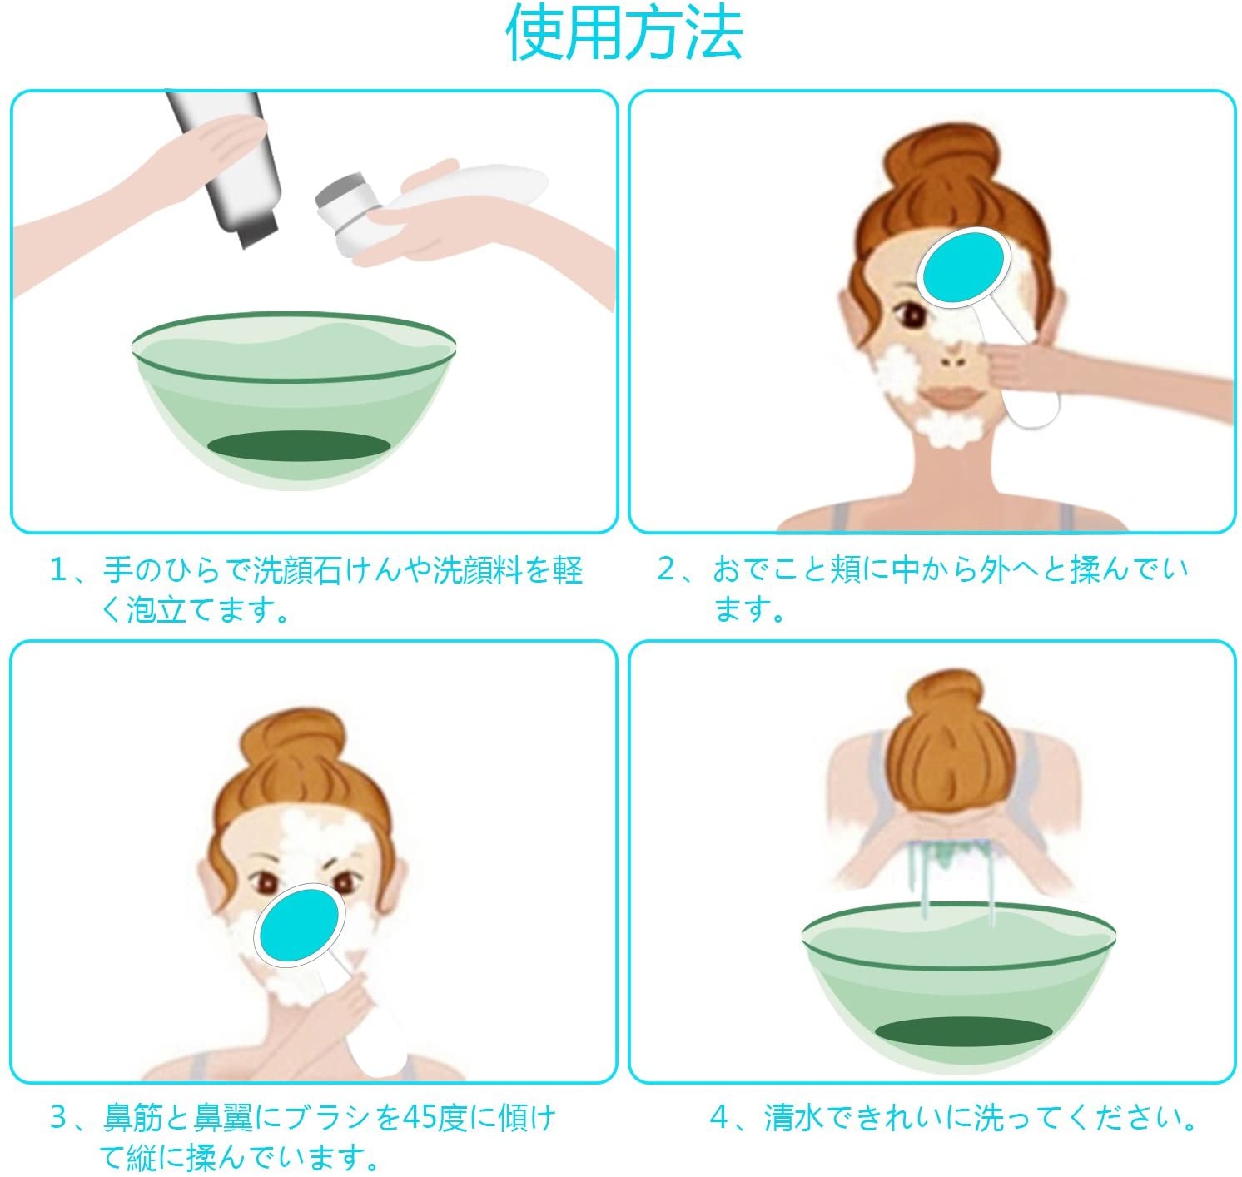 SEPOVEDA(セポヴェダ) 洗顔用フェイスブラシの商品画像サムネ5 